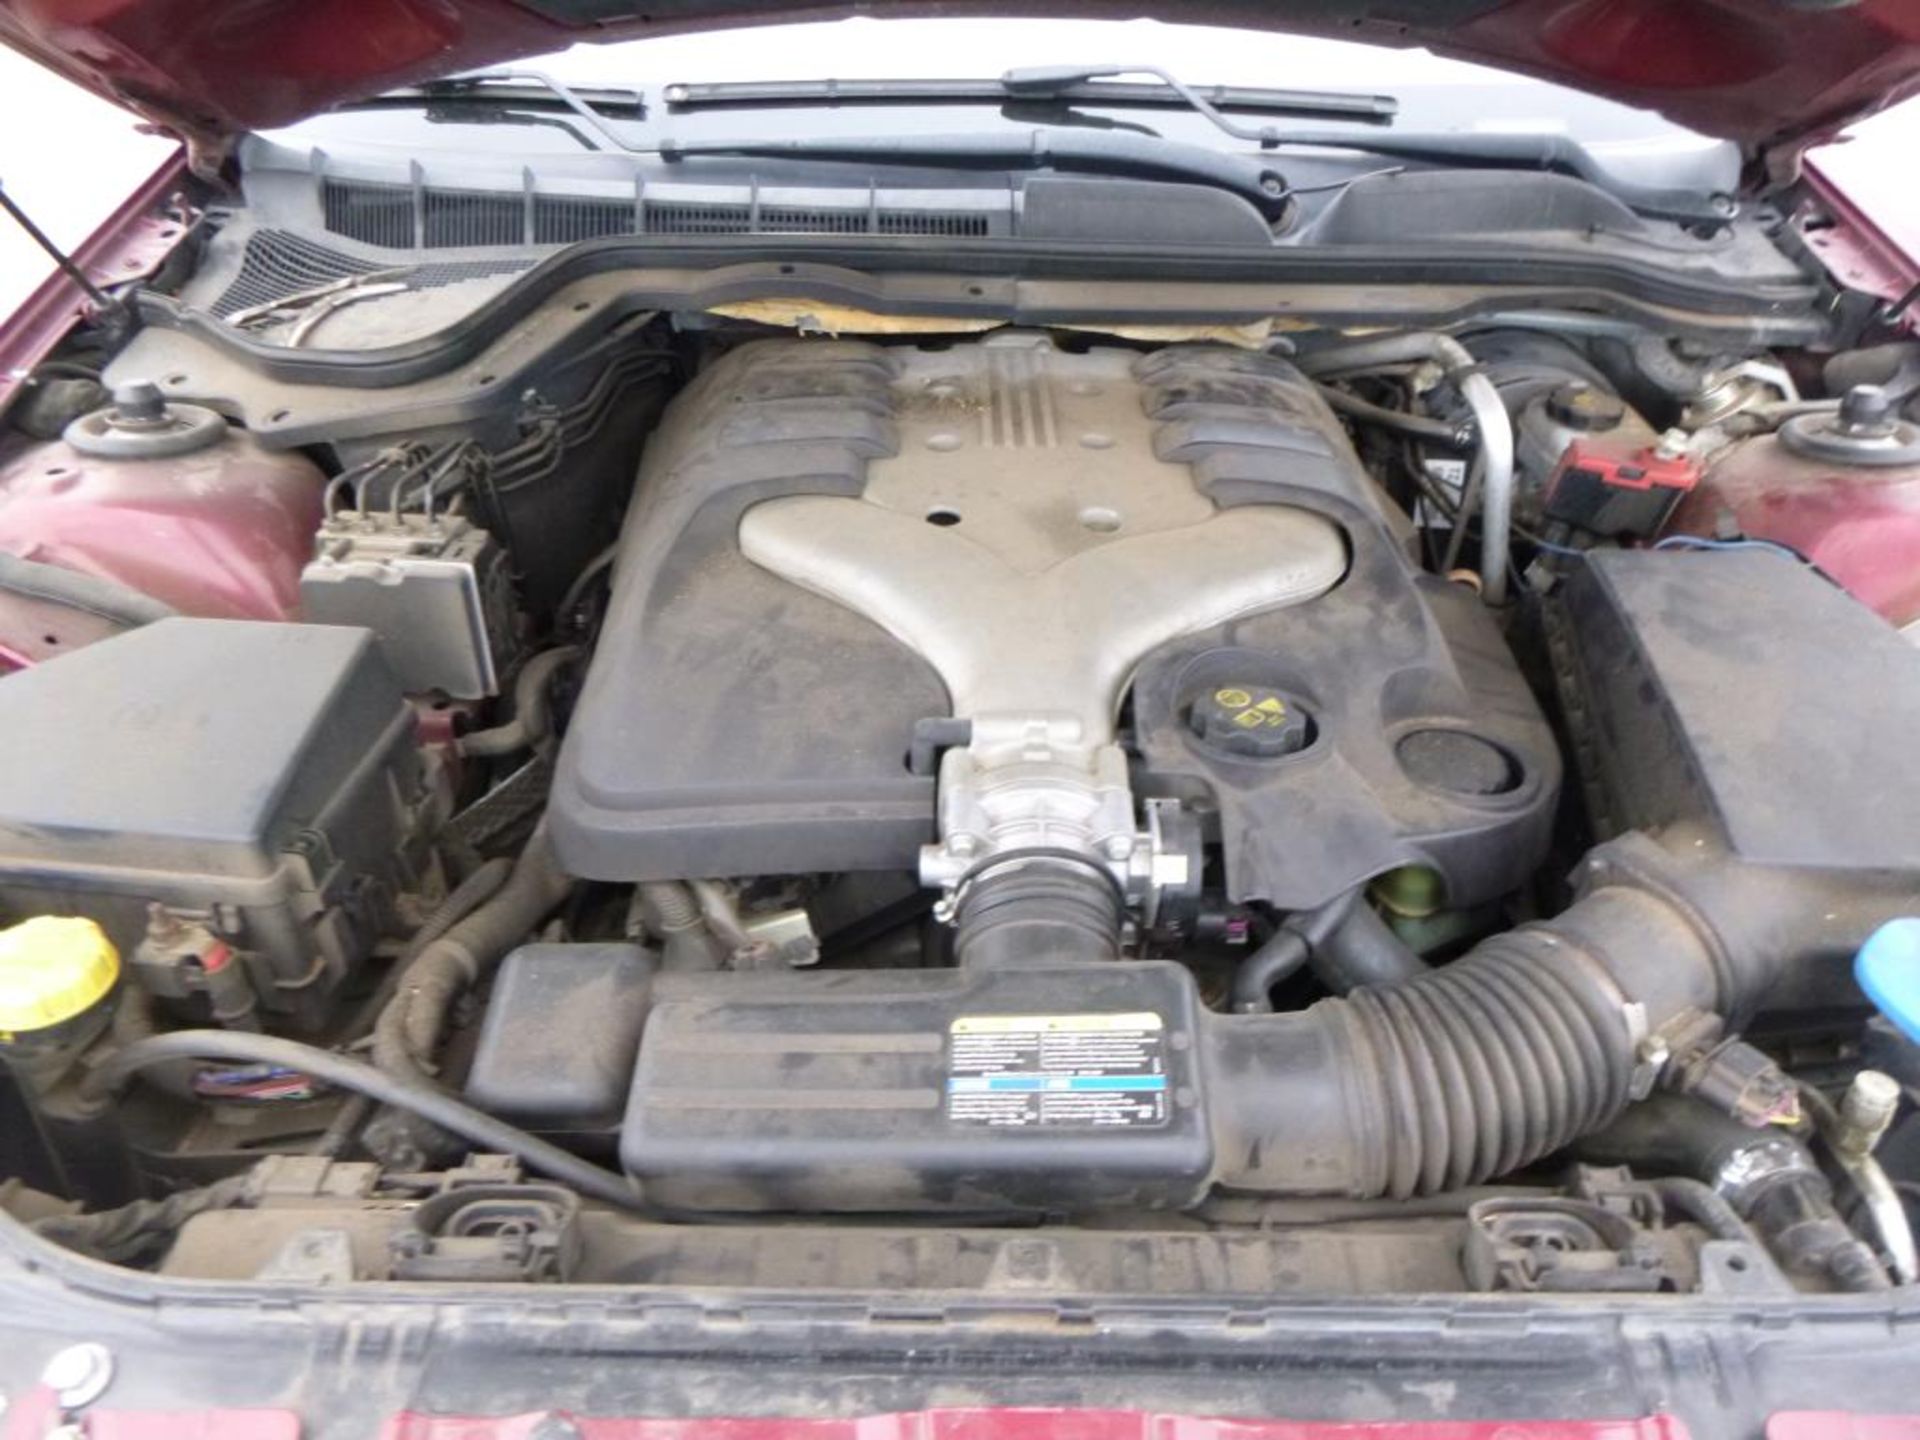 2009 Pontiac G8 - Image 10 of 11